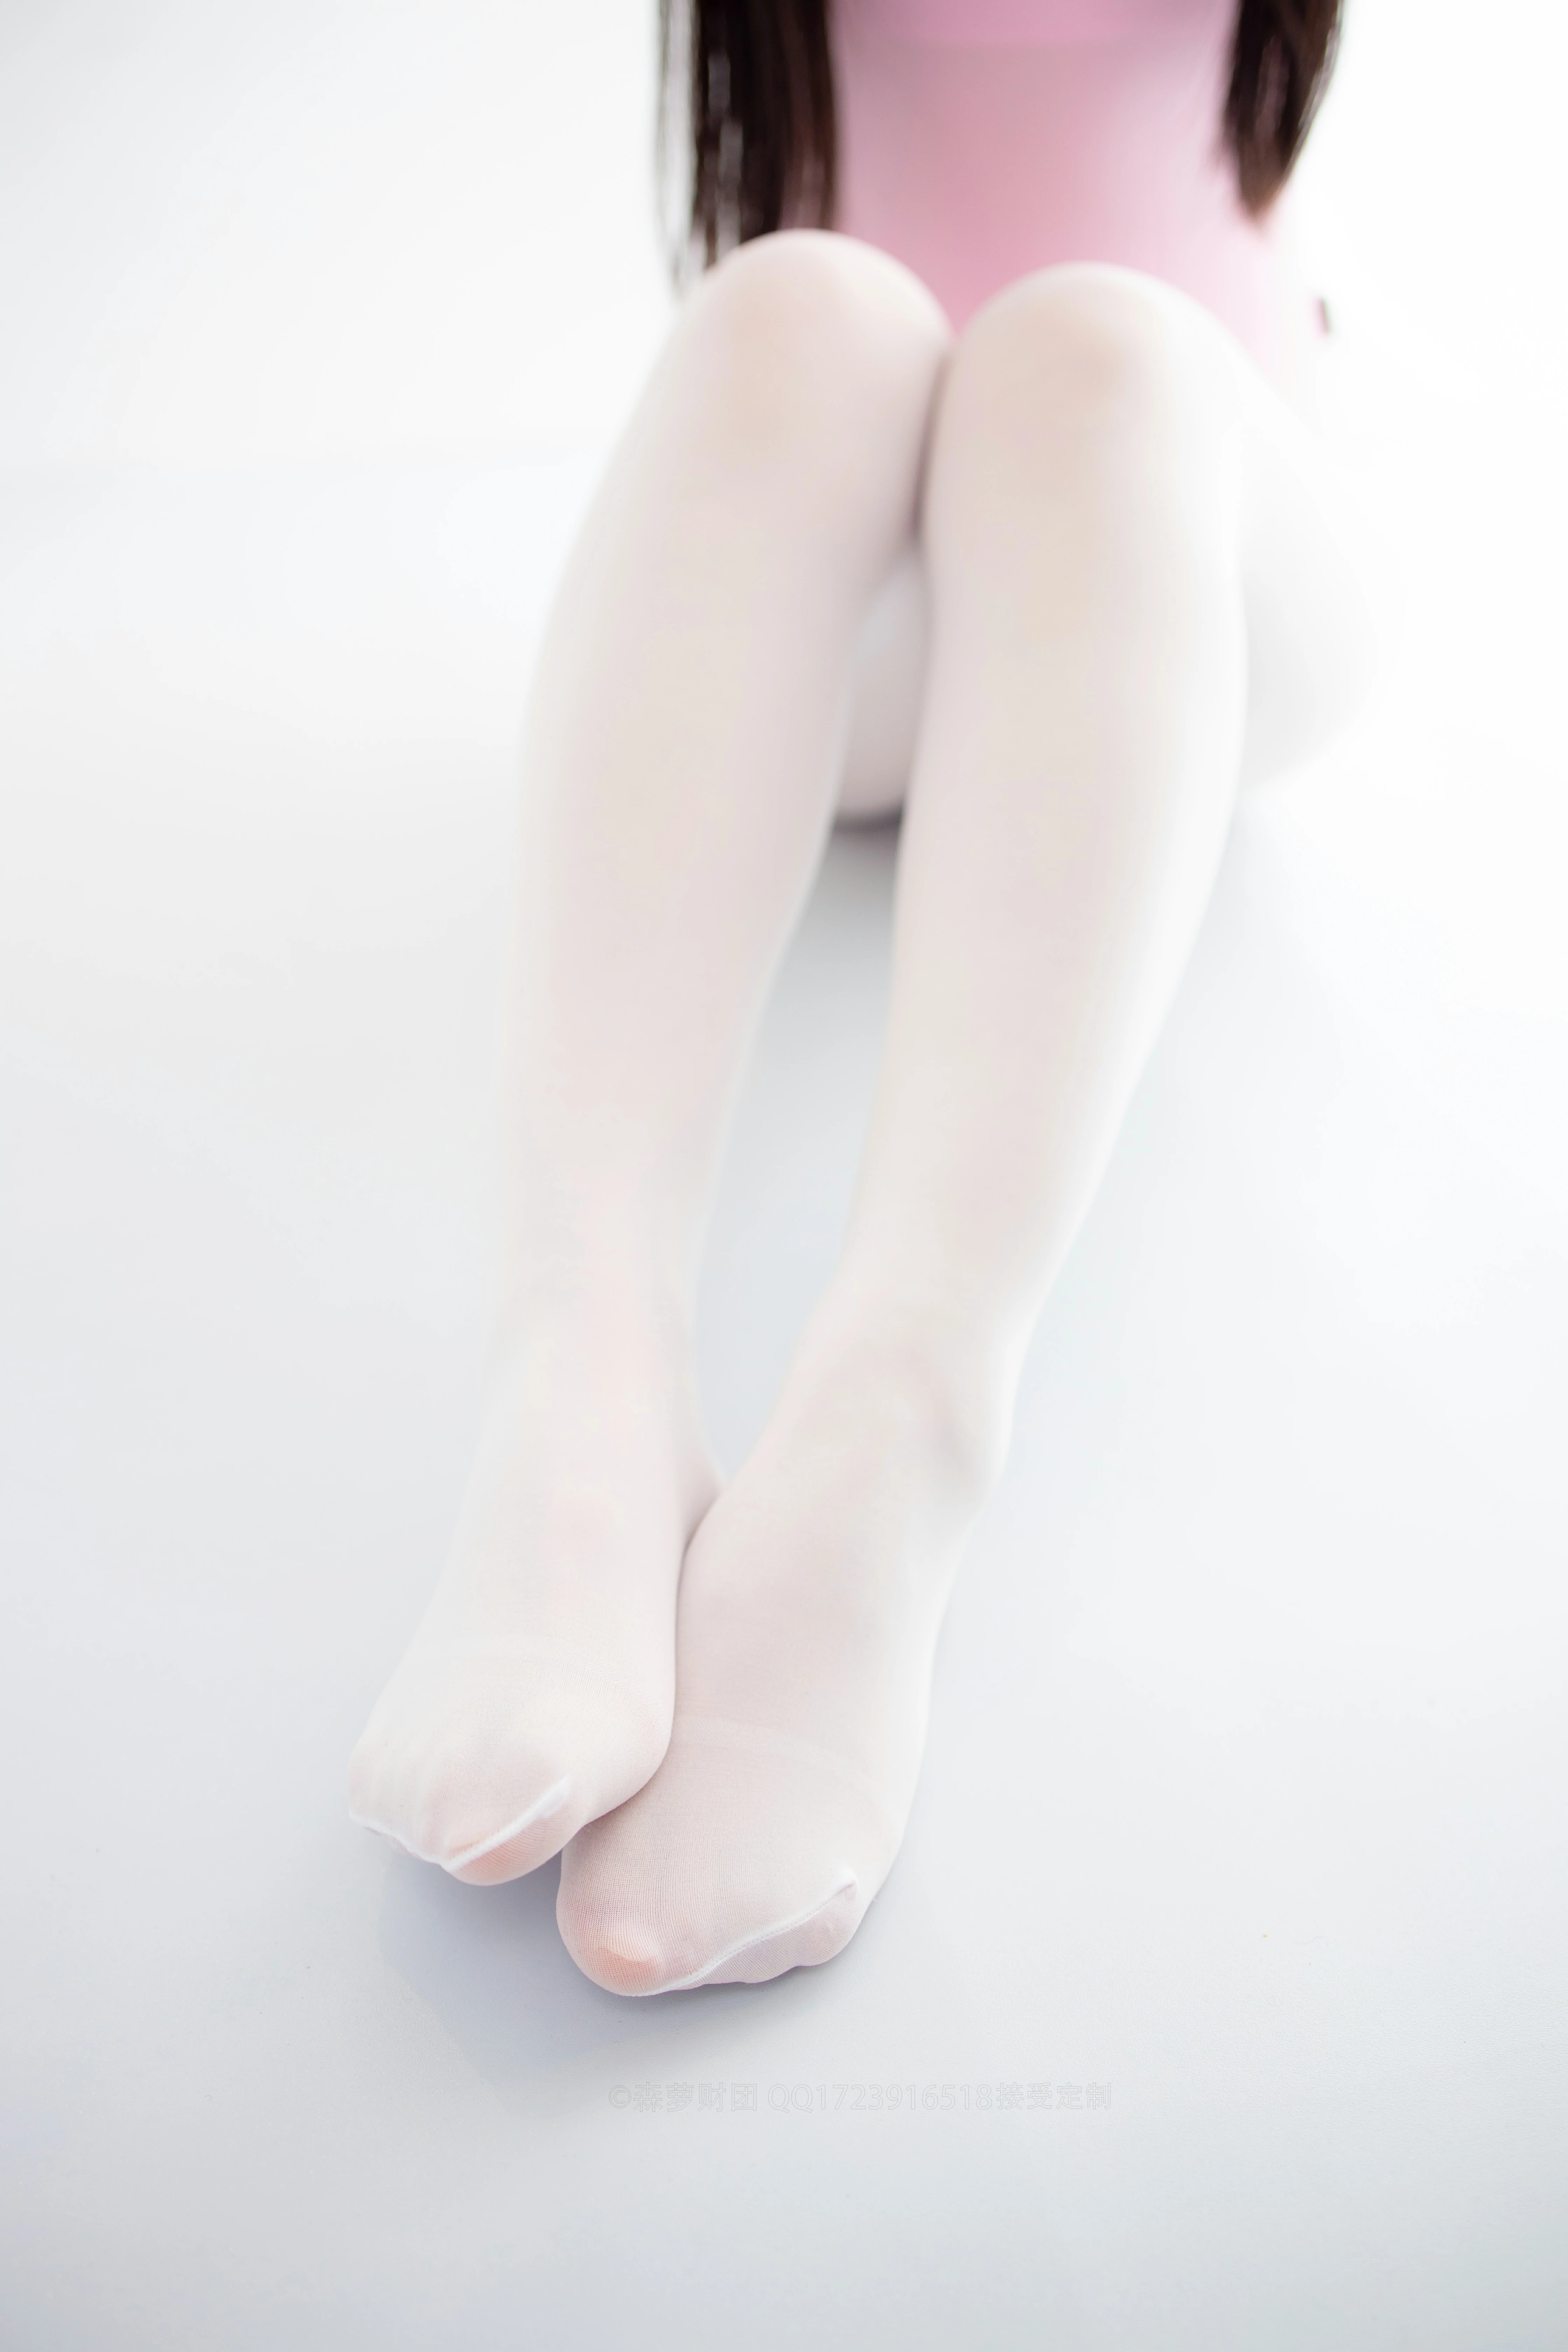 [森萝财团]X-053 清纯可爱小萝莉 粉色连体运动内衣加白色丝袜美腿玉足性感私房写真集,